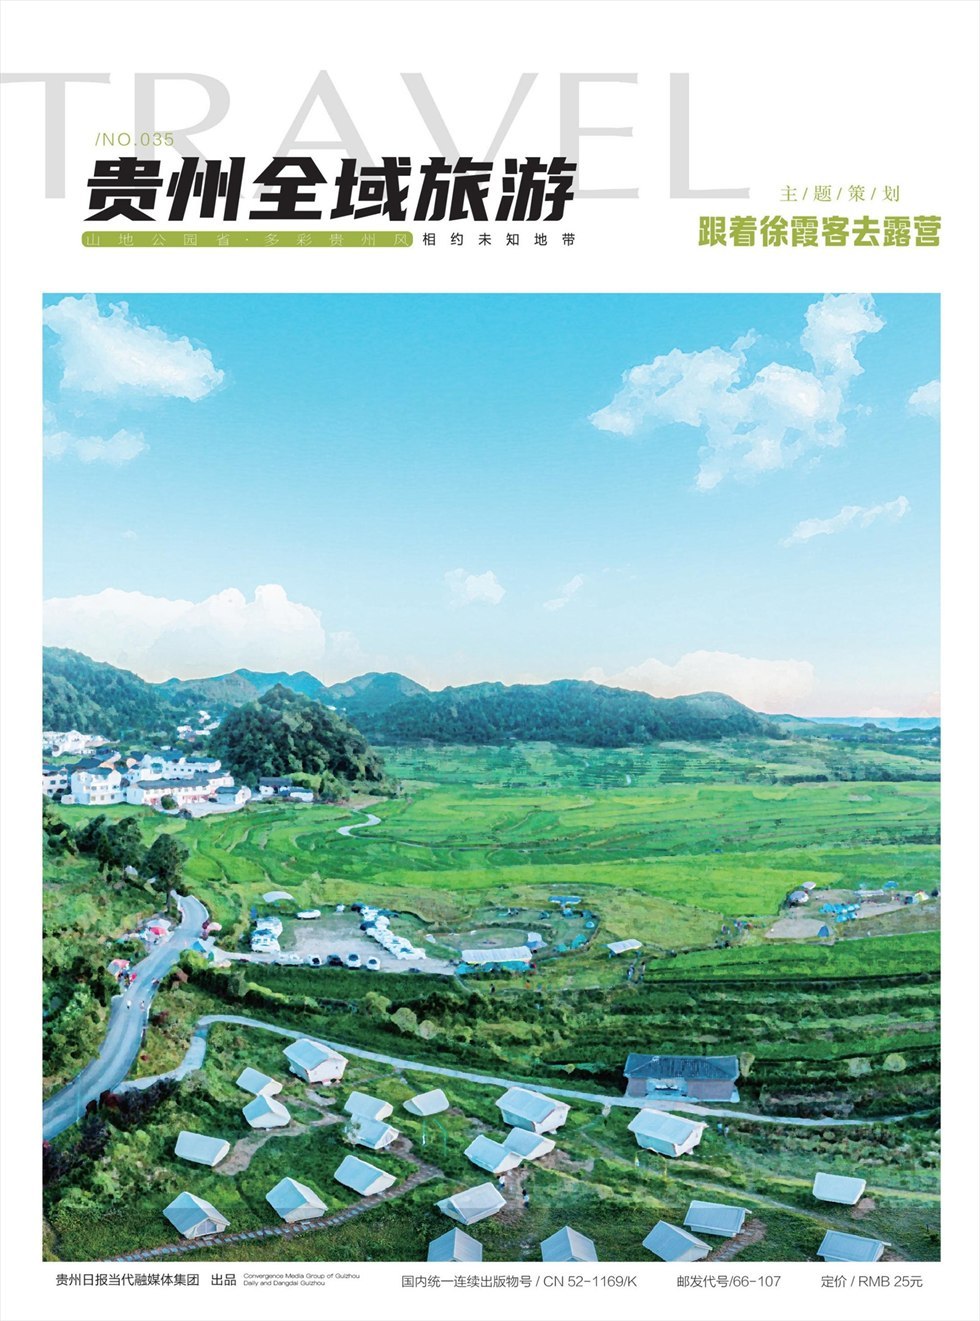 贵州全域旅游杂志封面